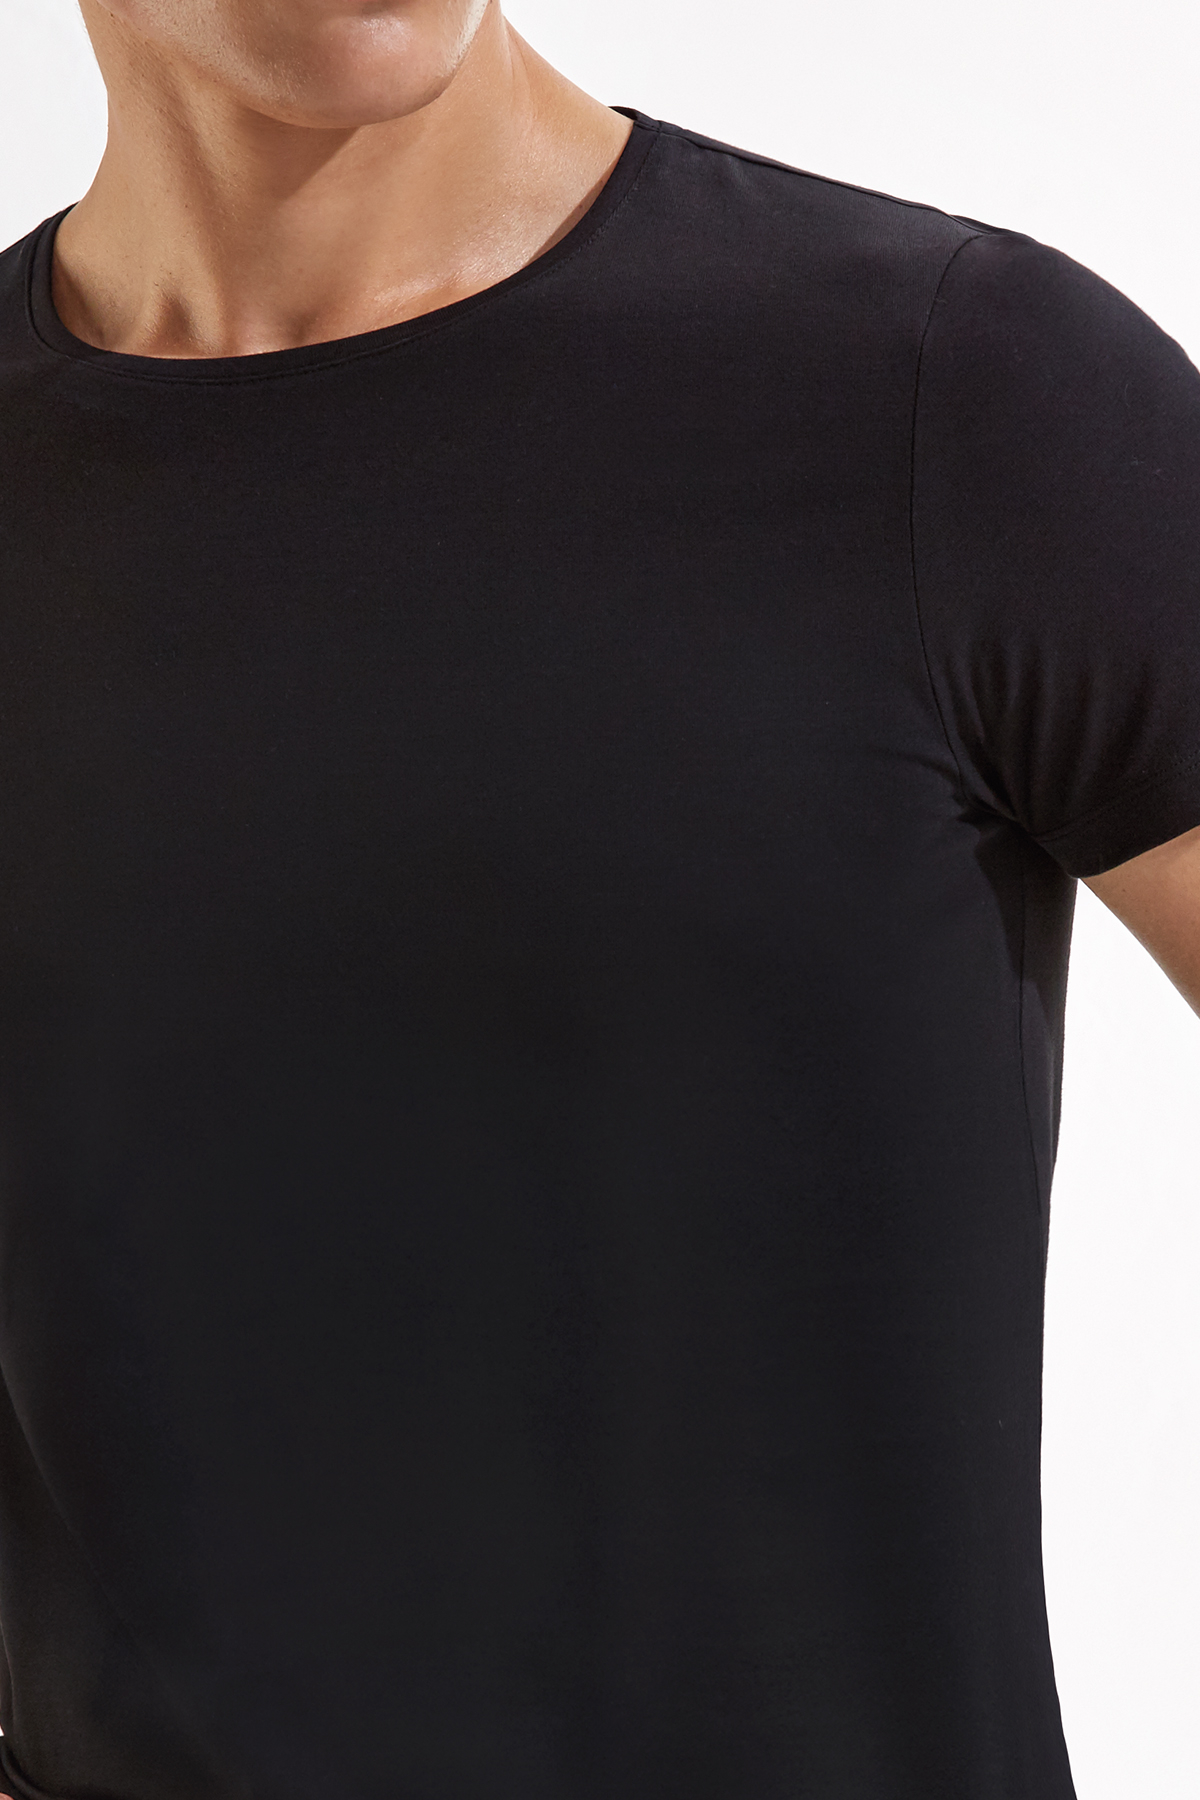 Pamuklu Siyah İç Giyim T-Shirt